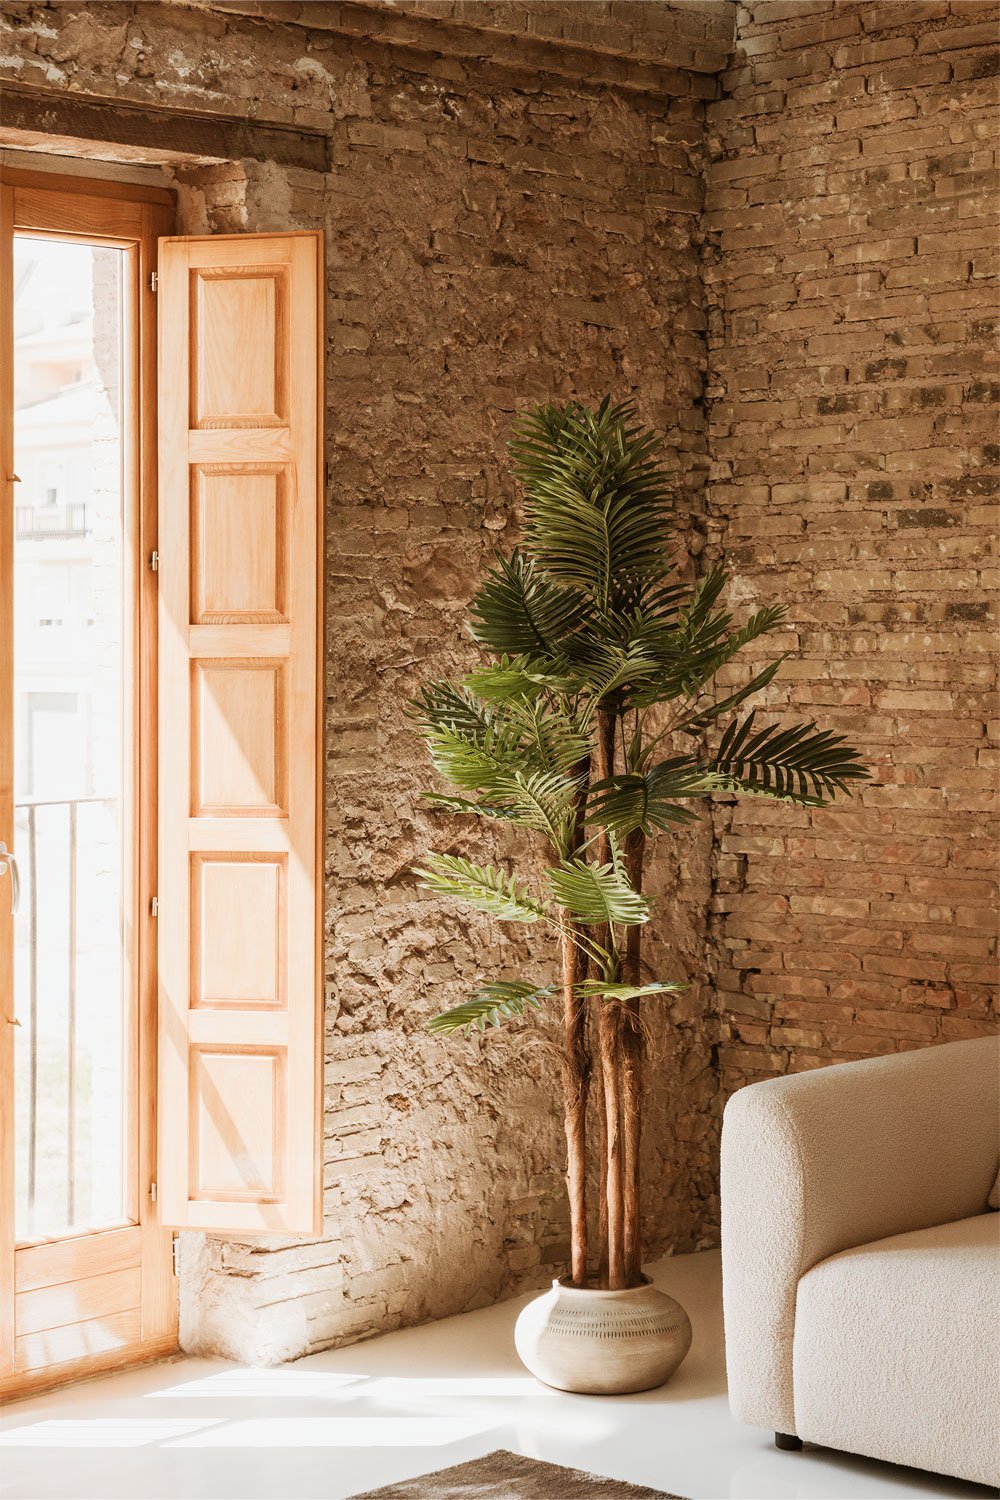 Planta Artificial Decorativa Palmeira Design, imagem de galeria 1